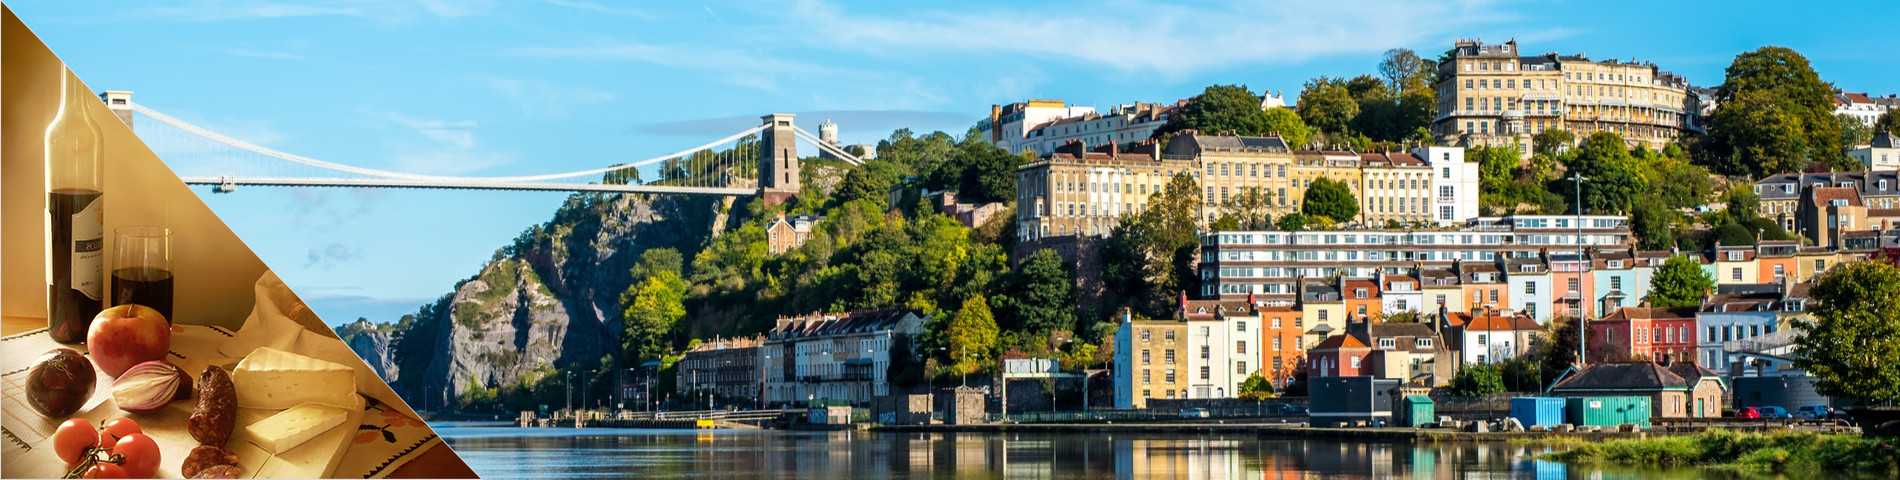 Bristol - Angličtina a kultúra